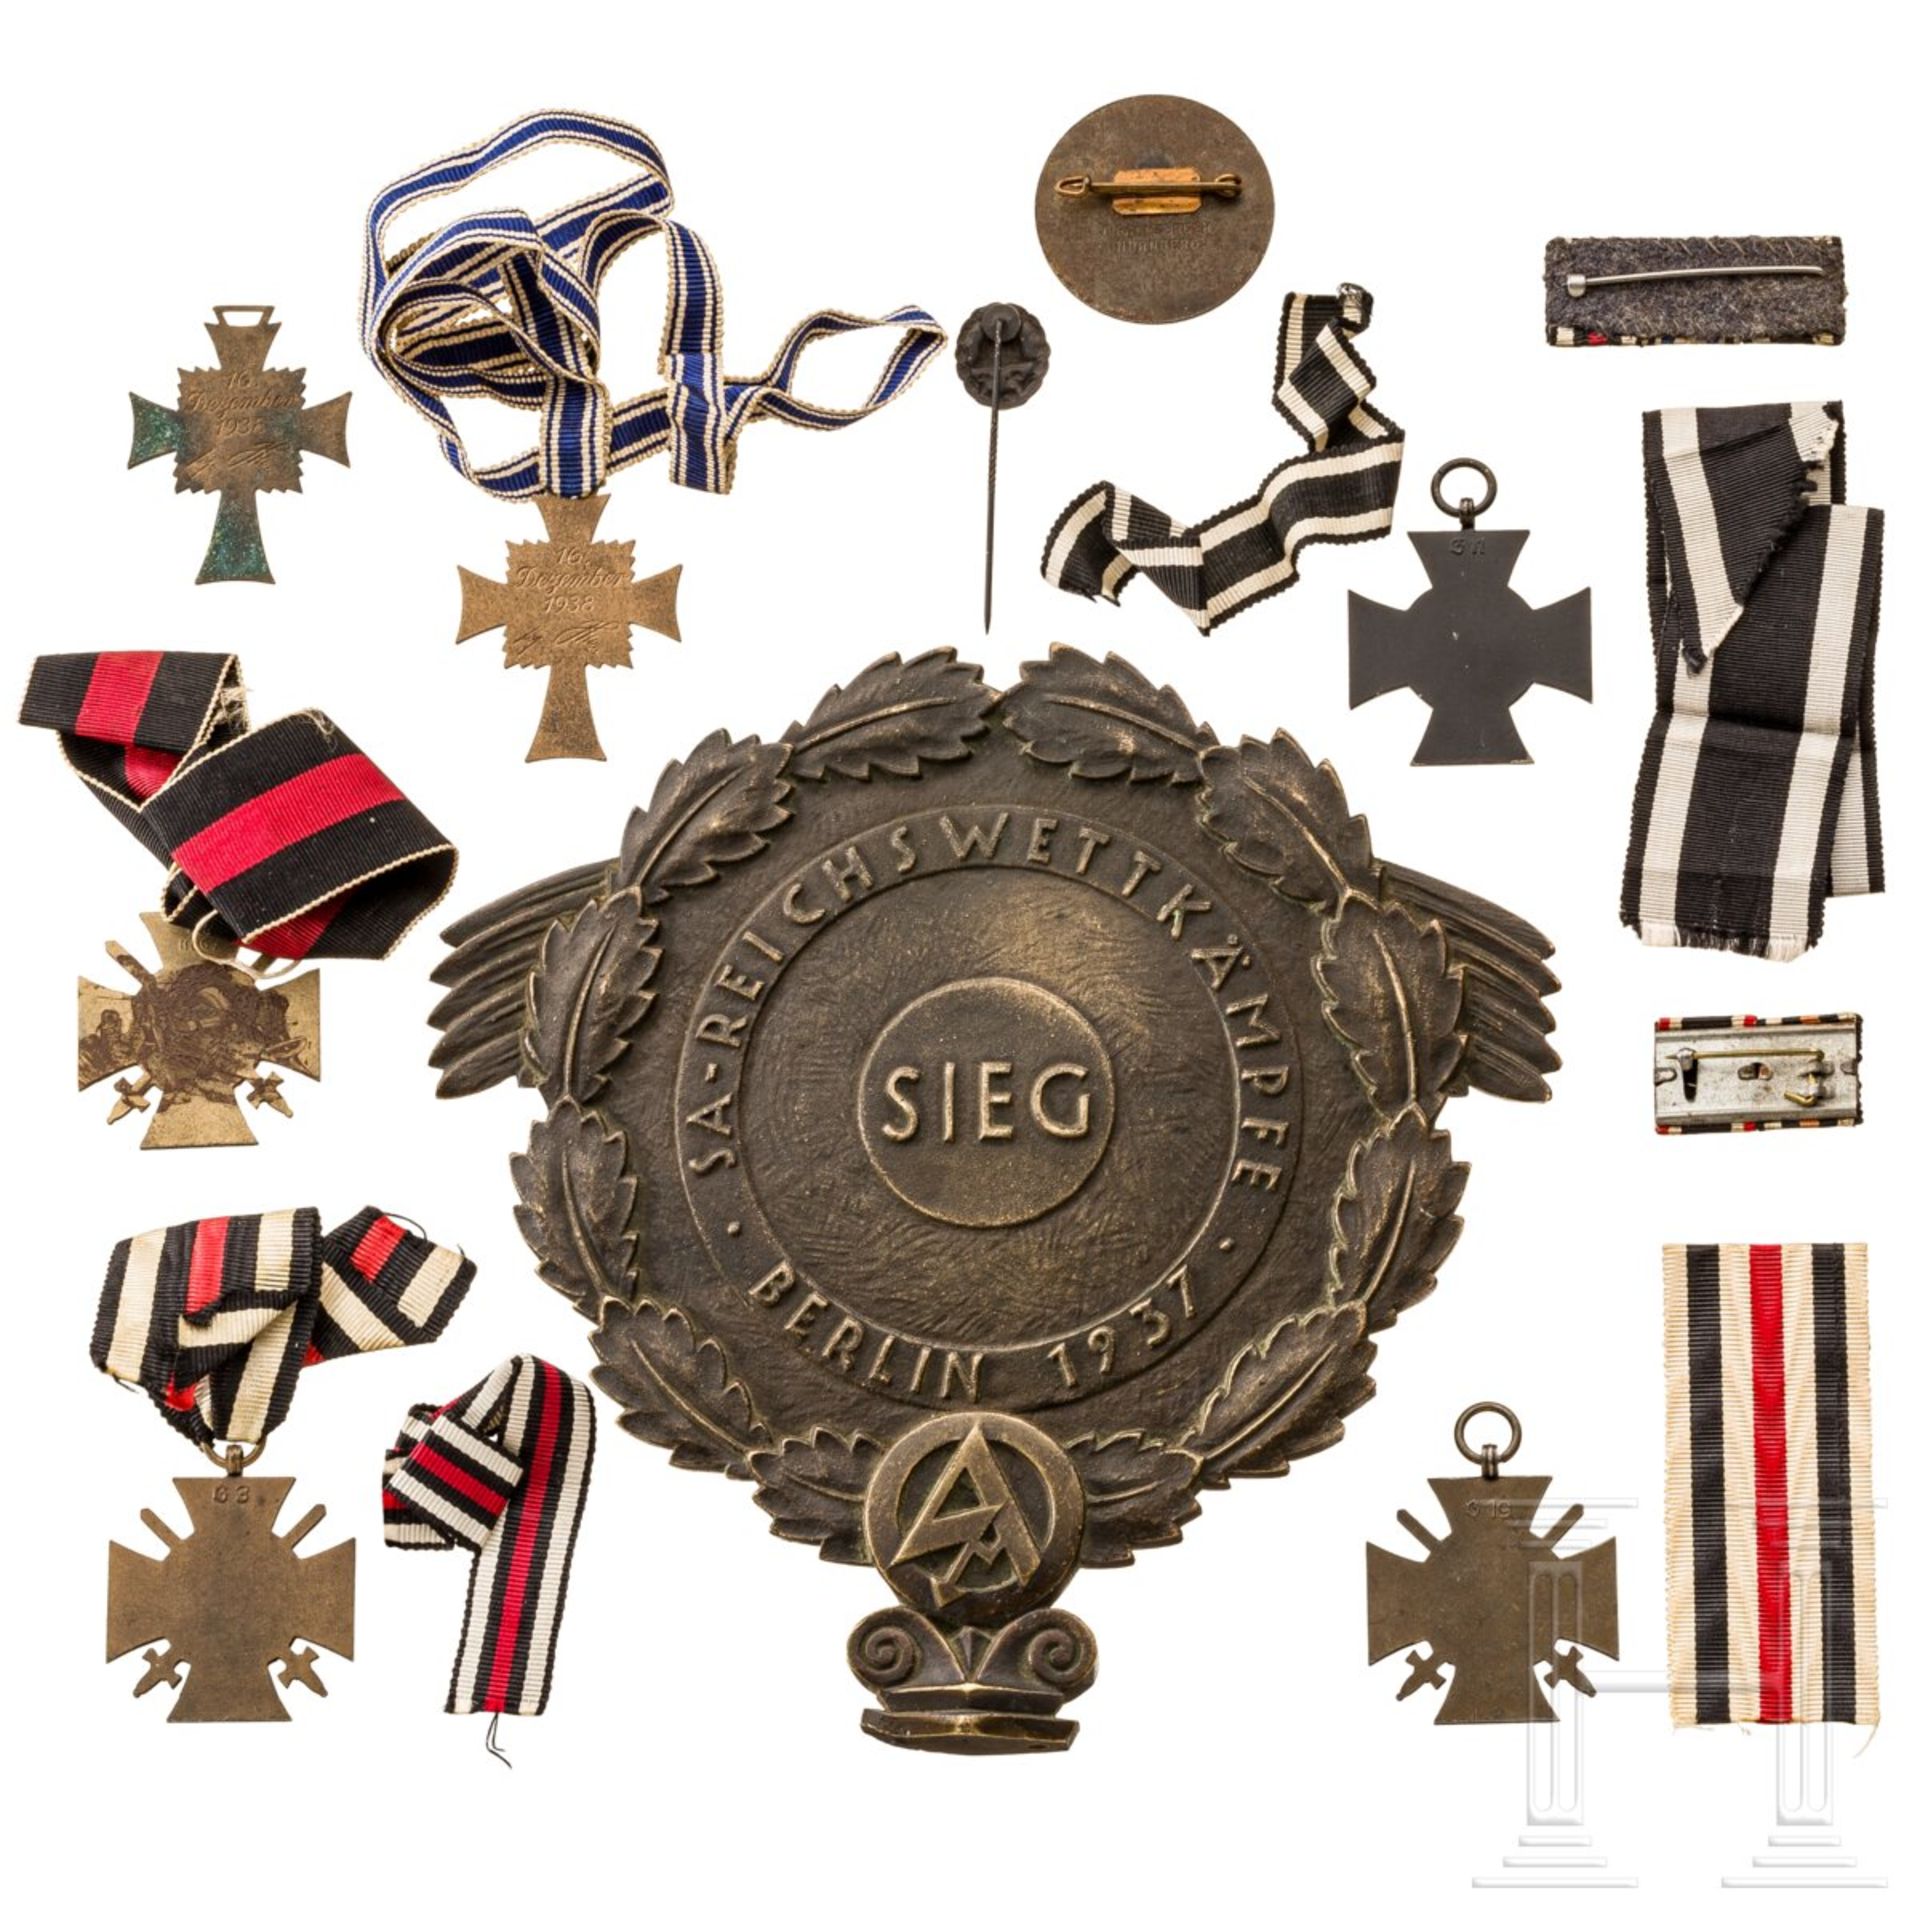 Siegerpreis der SA-Reichswettkämpfe Berlin, 1937 - Image 4 of 4